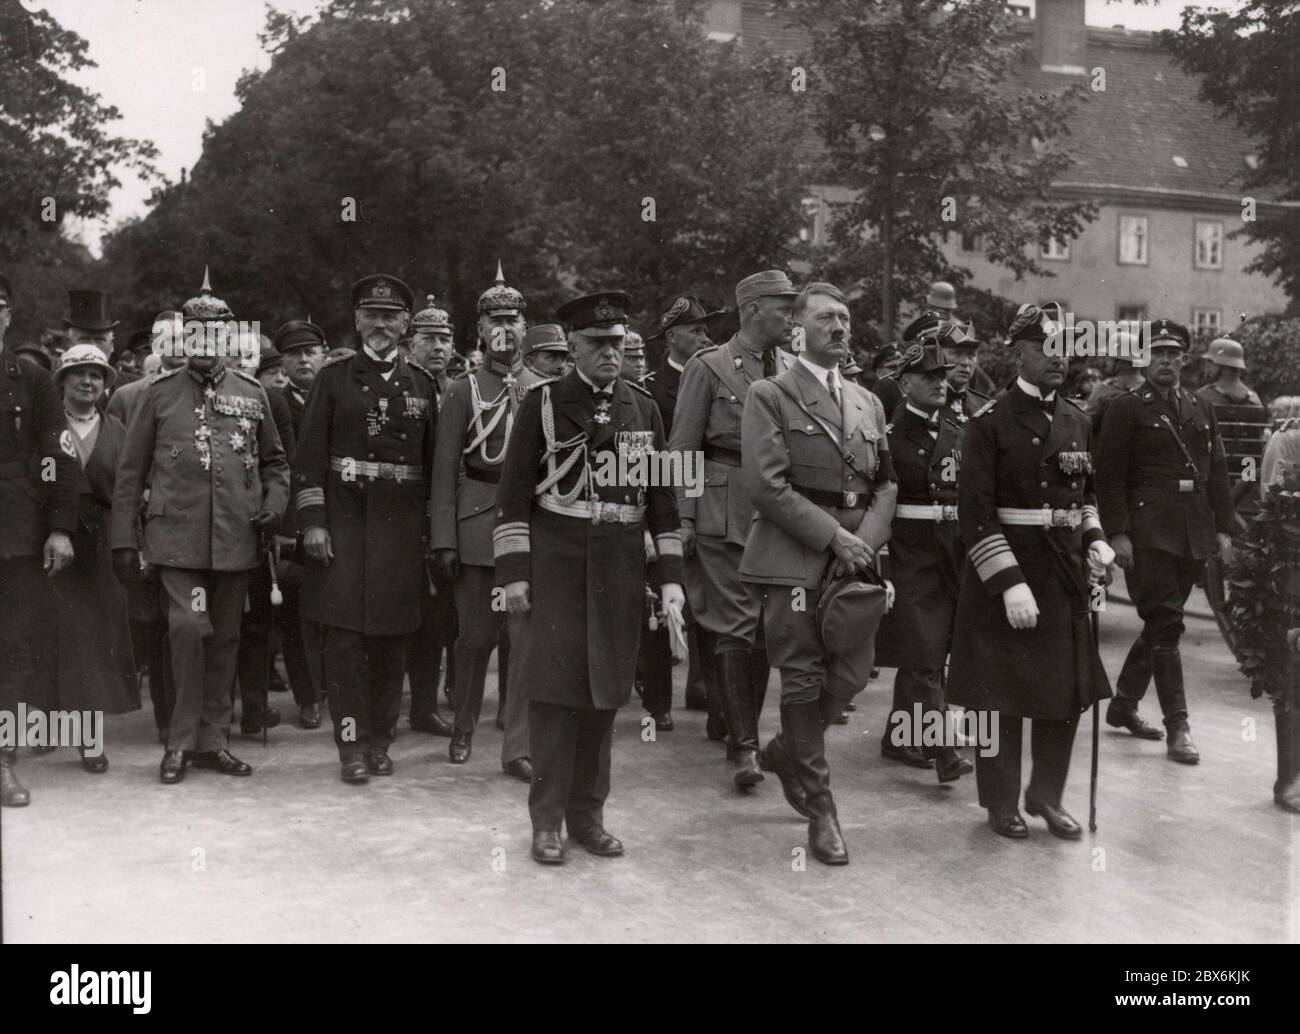 Staatsbegräbnis - Admiral von Trotha - Hitler - Admiral Raeder Heinrich Hoffmann Photographs 1933 Adolf Hitlers offizieller Fotograf und Nazi-Politiker und Verleger, der Mitglied des intime Kreises Hitlers war. Stockfoto